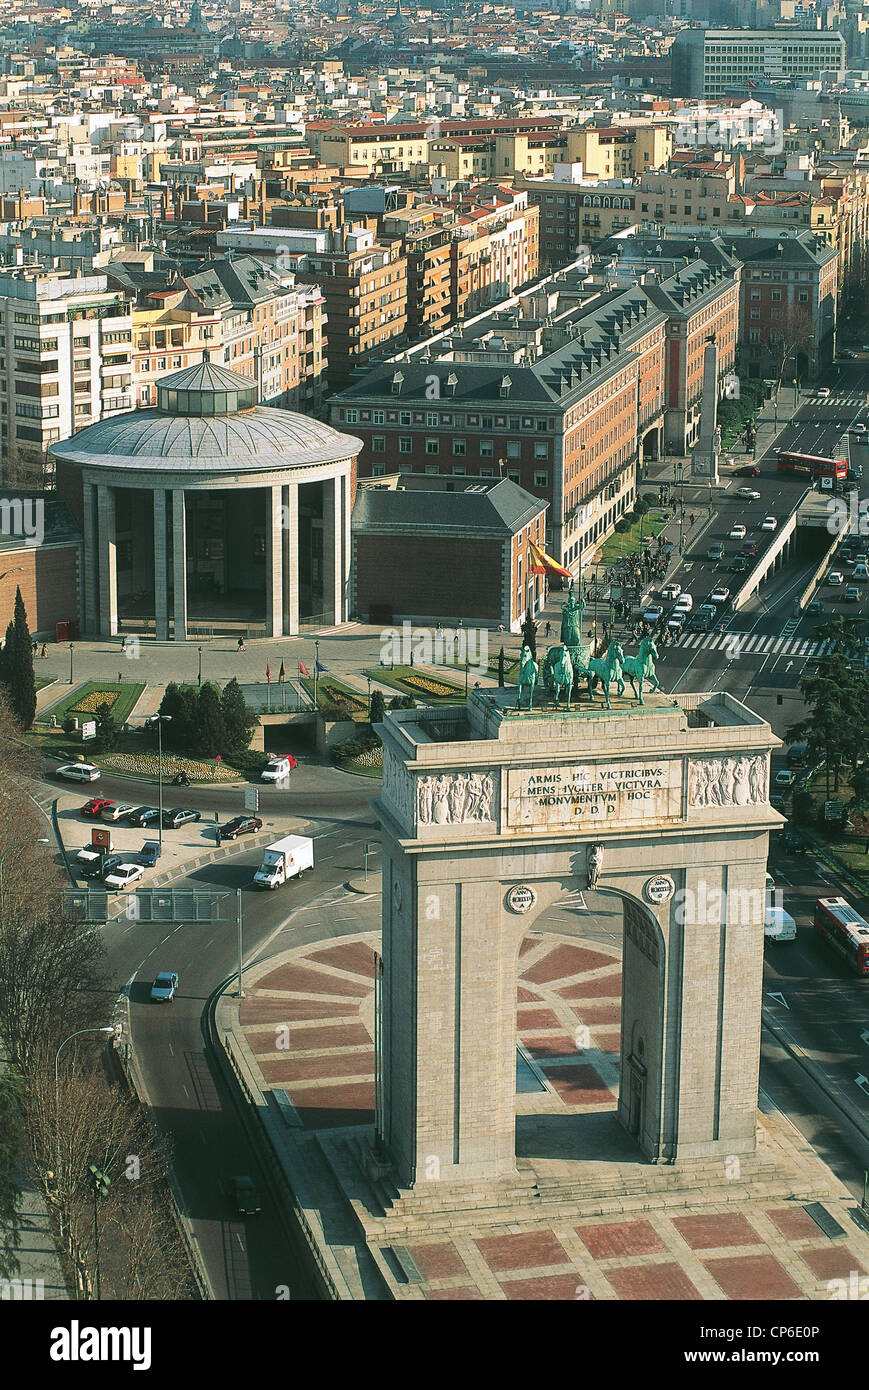 España - Madrid. Plaza de la Moncloa con el Arco de la Victoria. Foto de stock